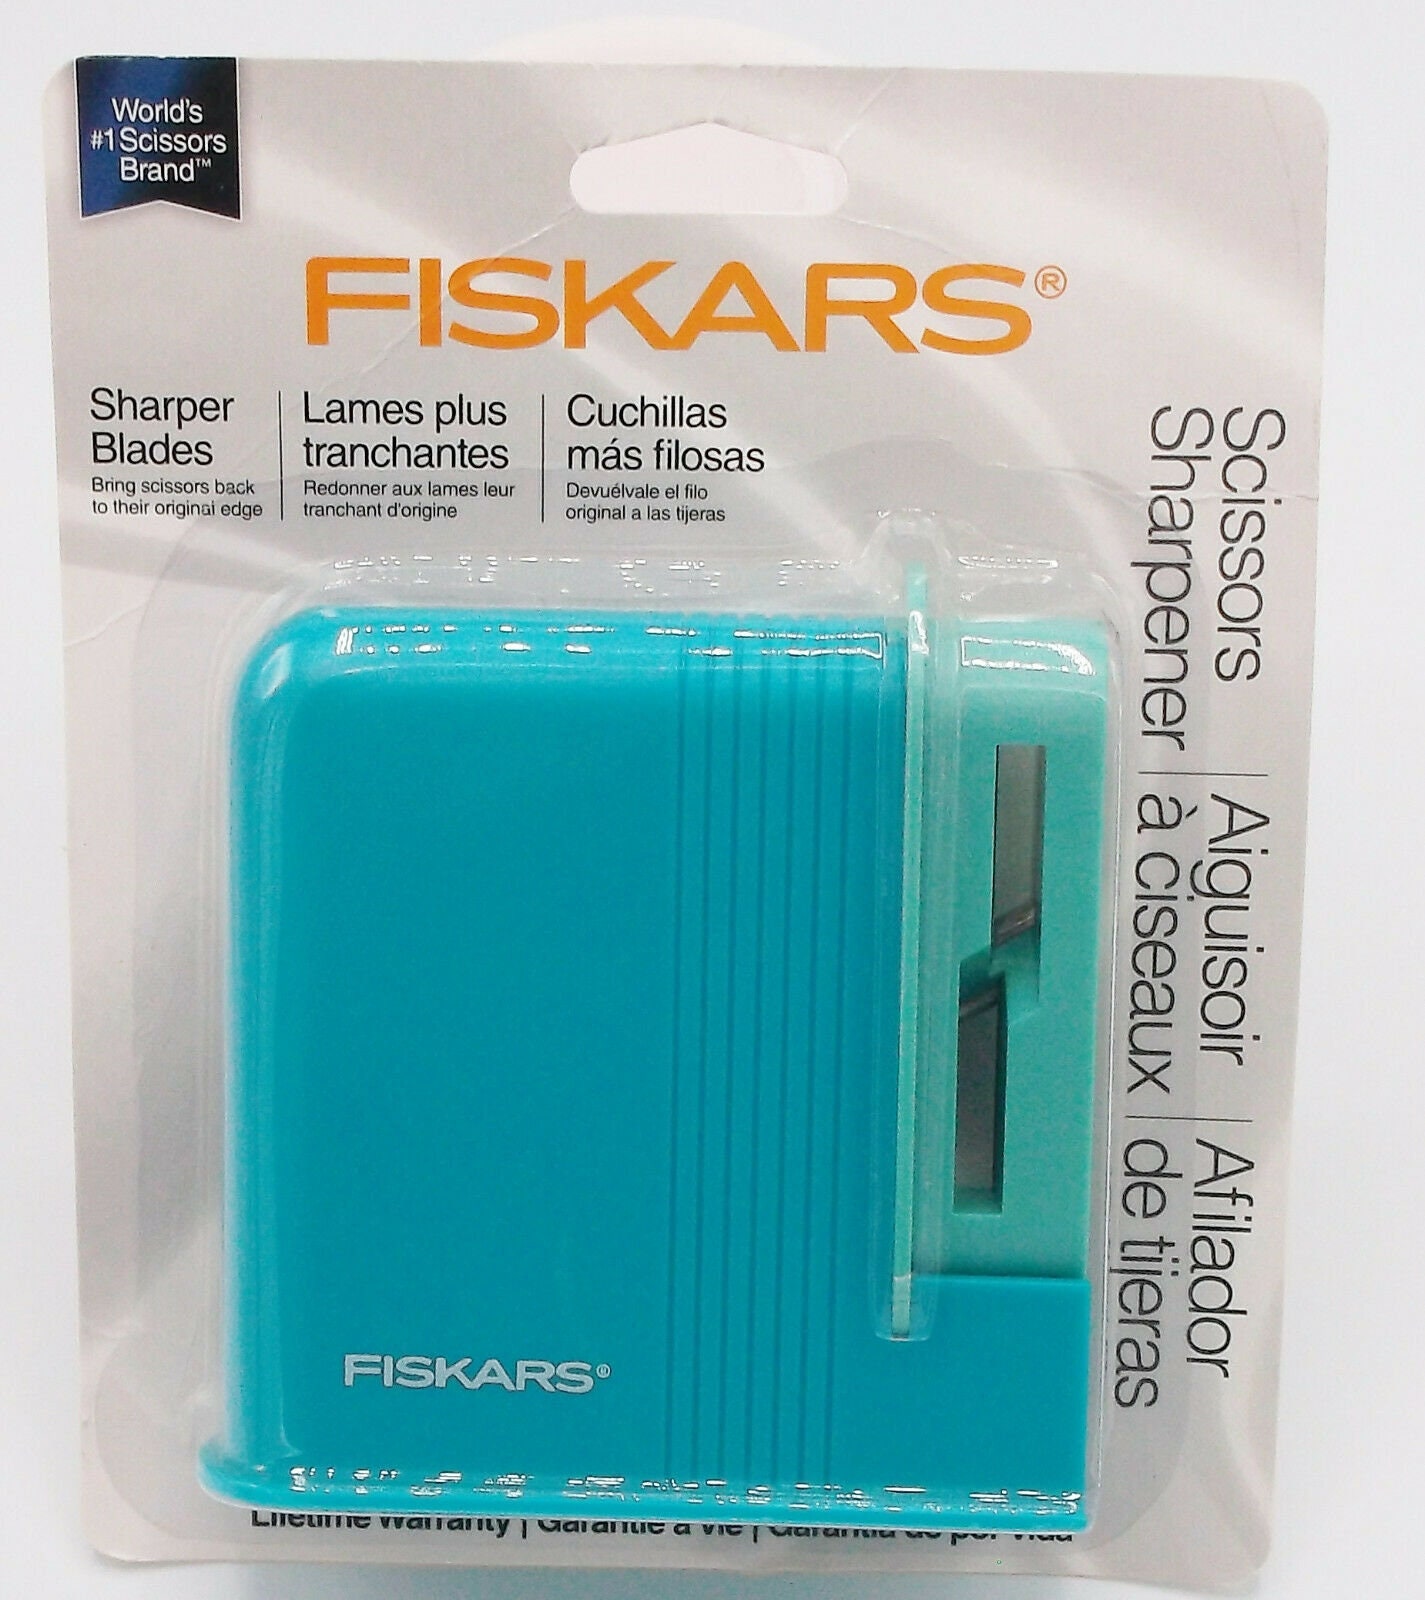 Fiskars 198610 Scissor Sharpener Asst Colors 1 Piece Only